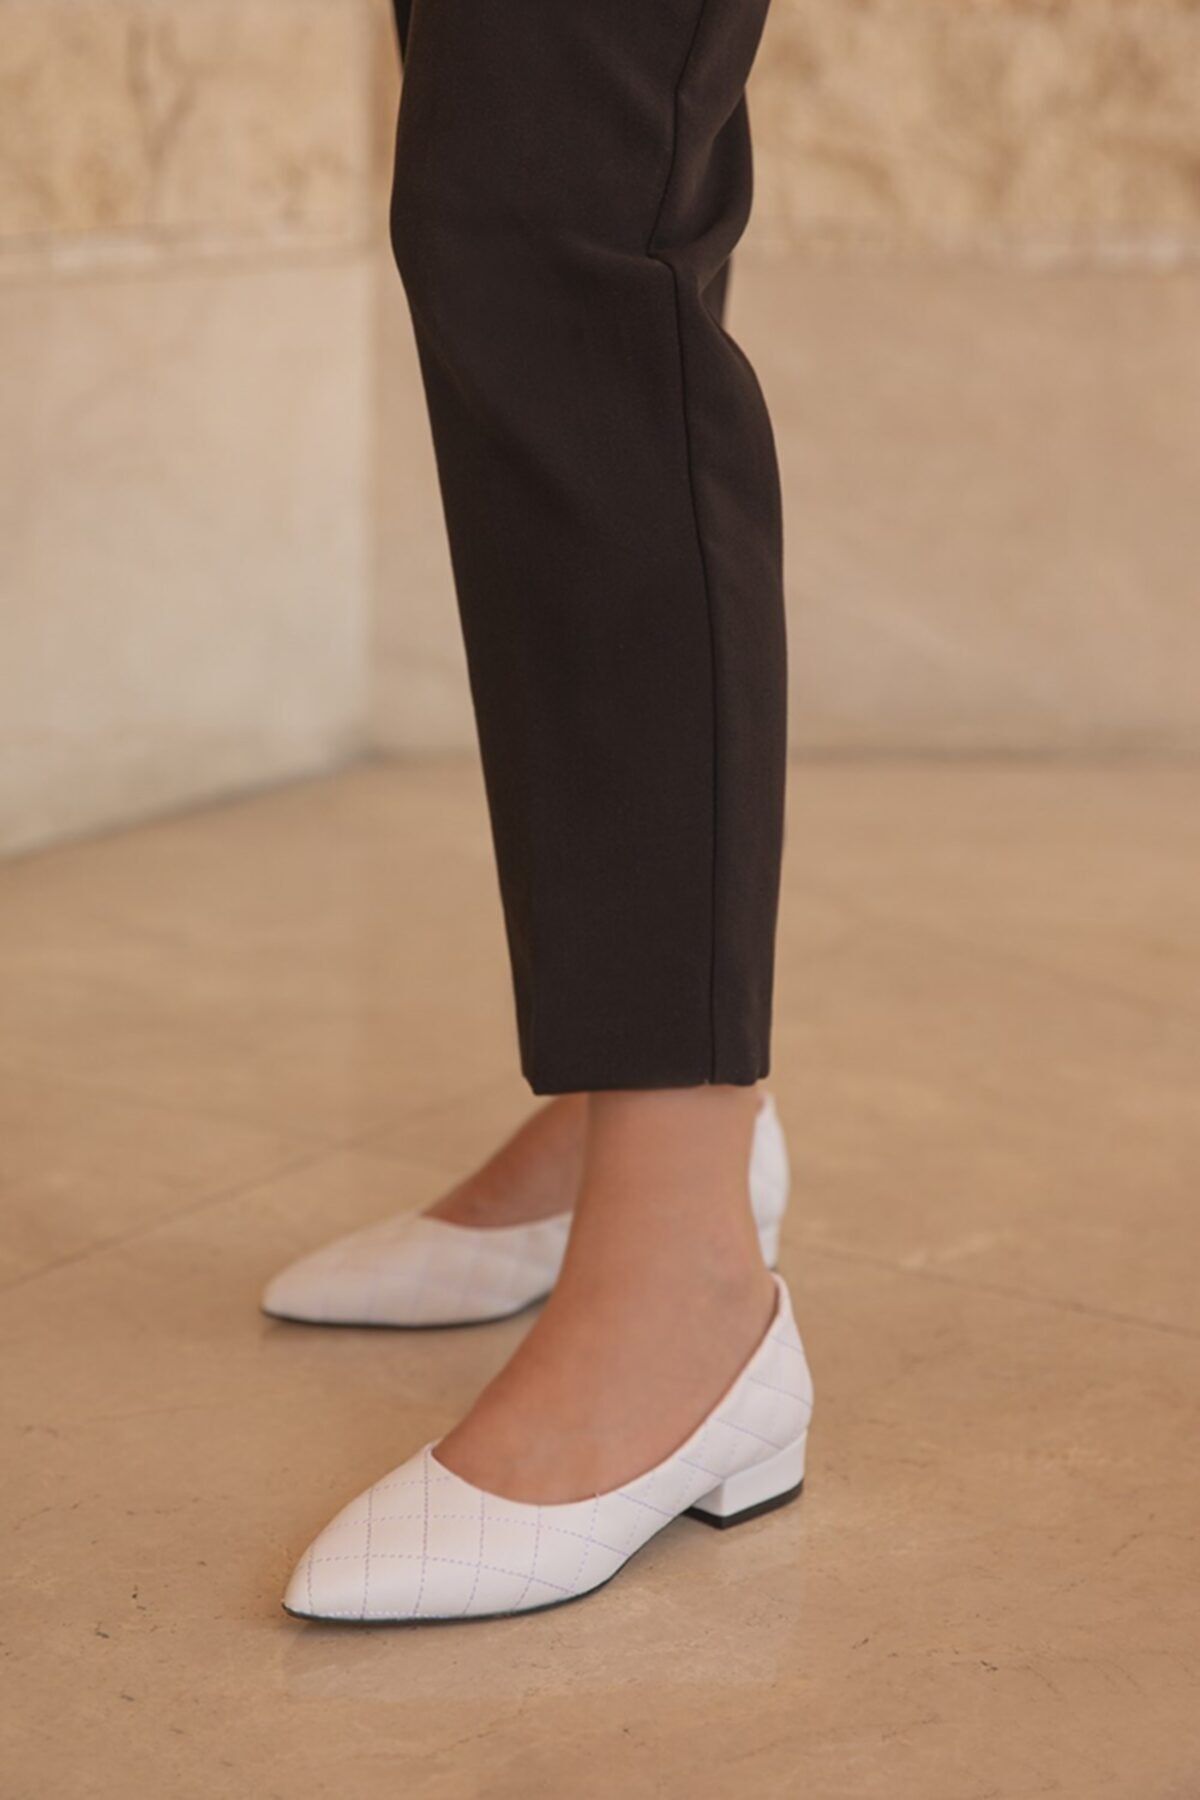 Straswans Worde Deri Topuklu Ayakkabı Beyaz